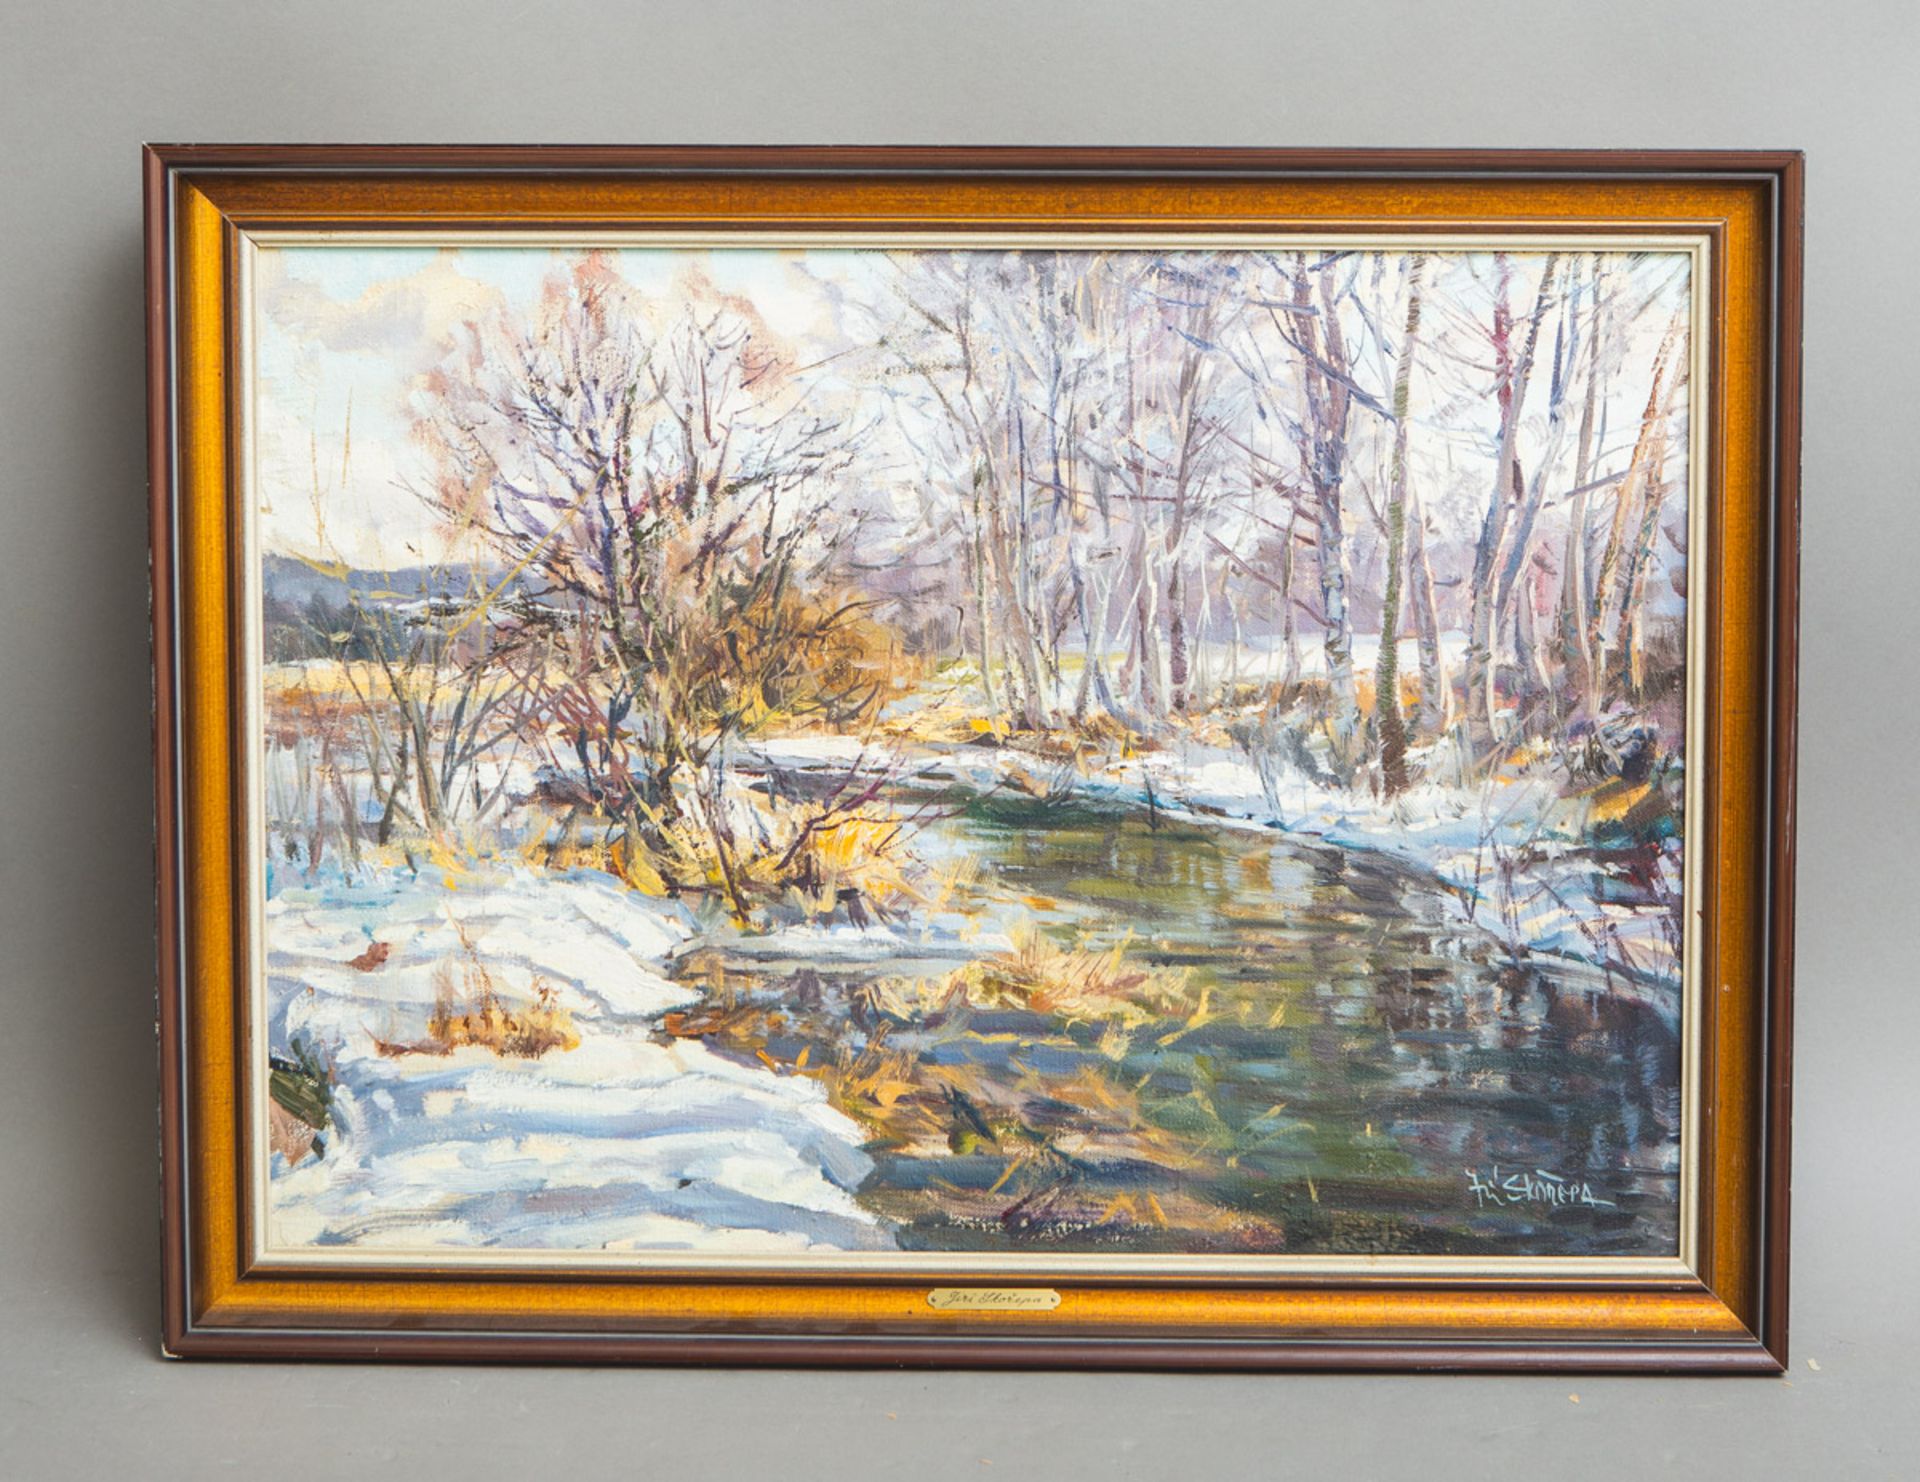 Skorepa, Jirí (geb. 1954), Winterliche Landschaft